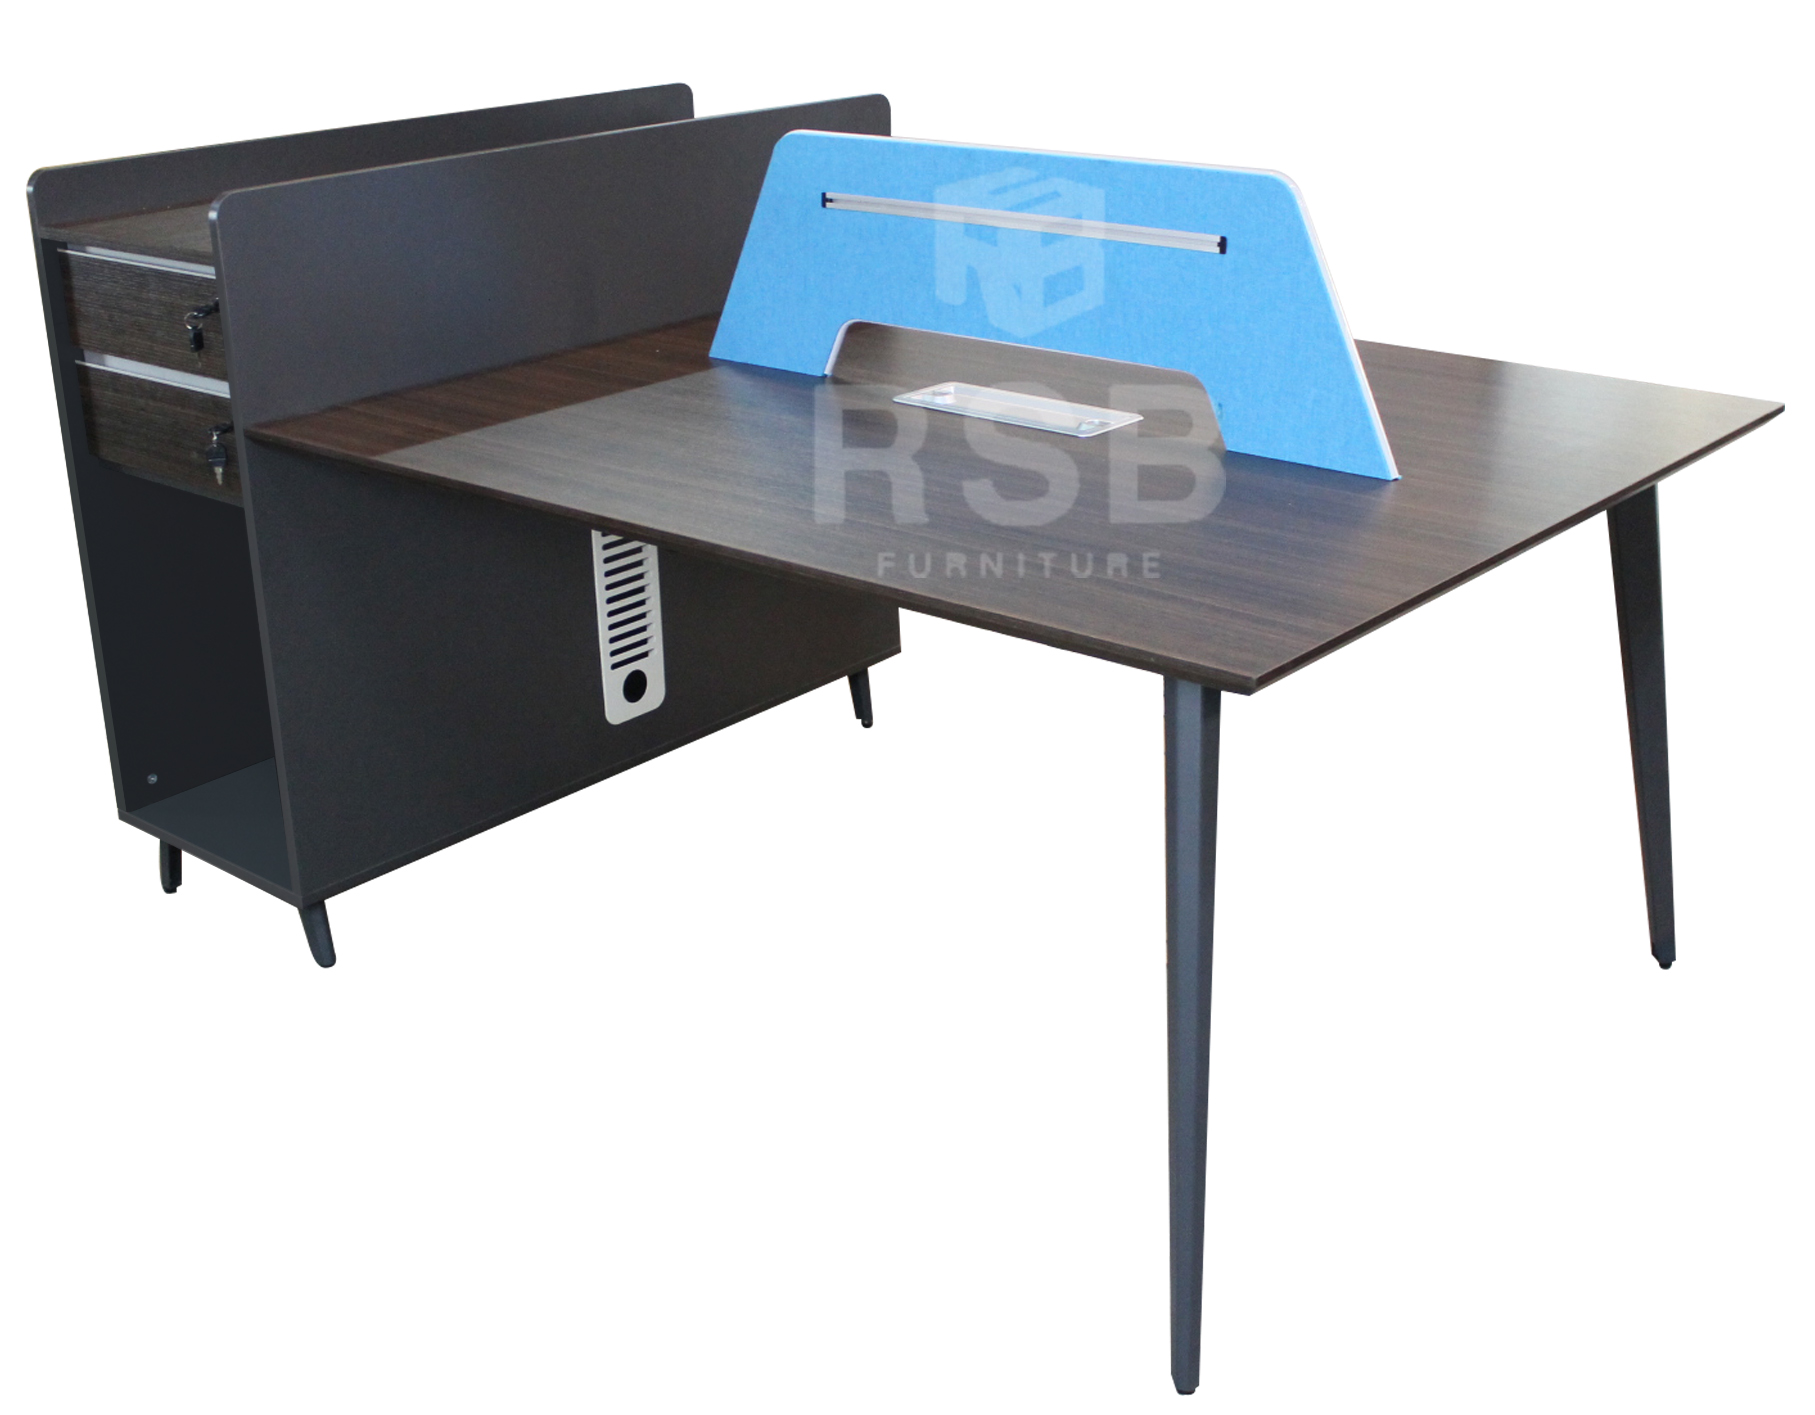 โต๊ะทำงานกลุ่ม WORKSTATION 2 ที่นั่ง ขนาด 187 x 120 cm พร้อมฉาก (สามารถซื้อเพิ่มเพื่อต่อได้) รหัส 2941